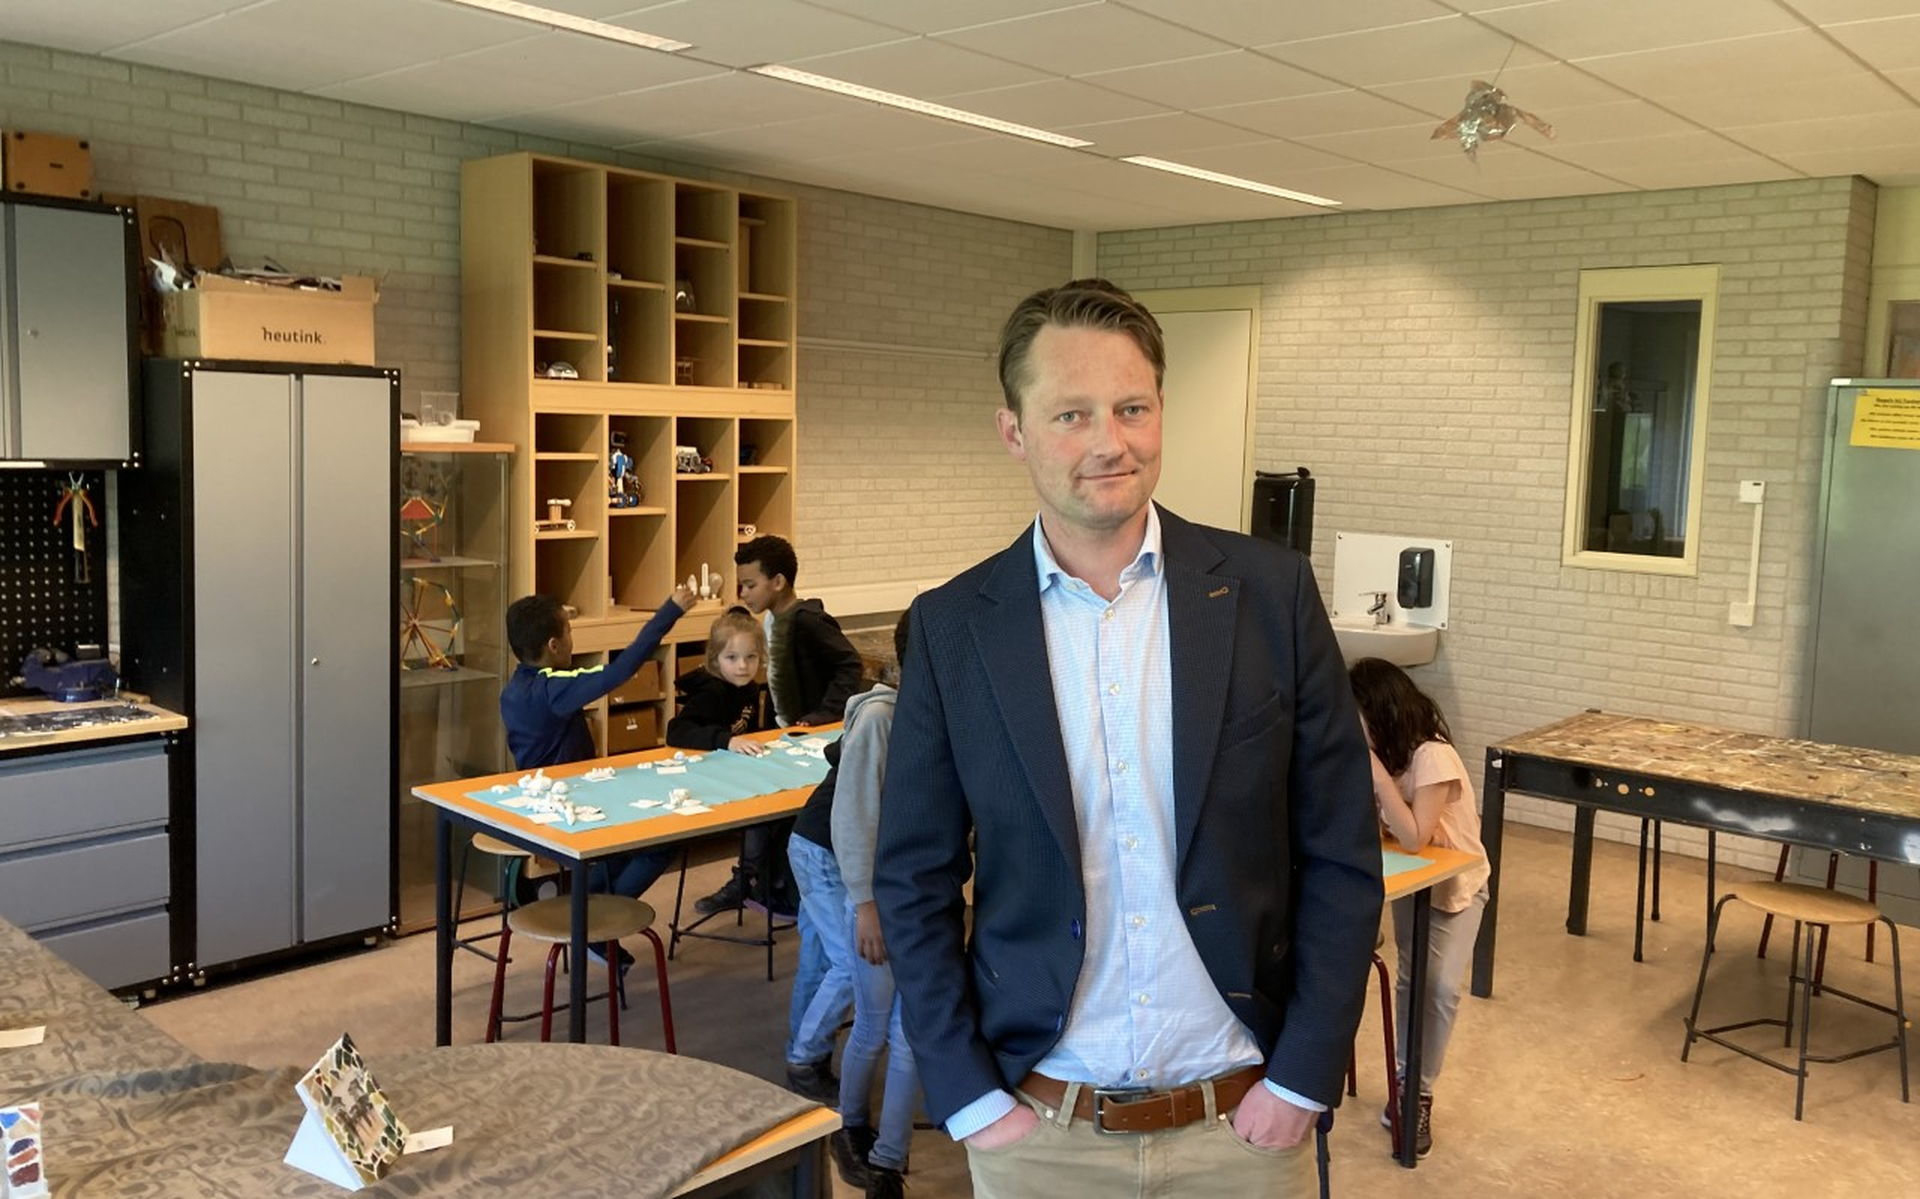 Op de foto: Directeur Jans Ronda van de scholen De Borgstee en Triangel allebei in Grijpskerk: 'Uit samenwerking is winst te behalen'.